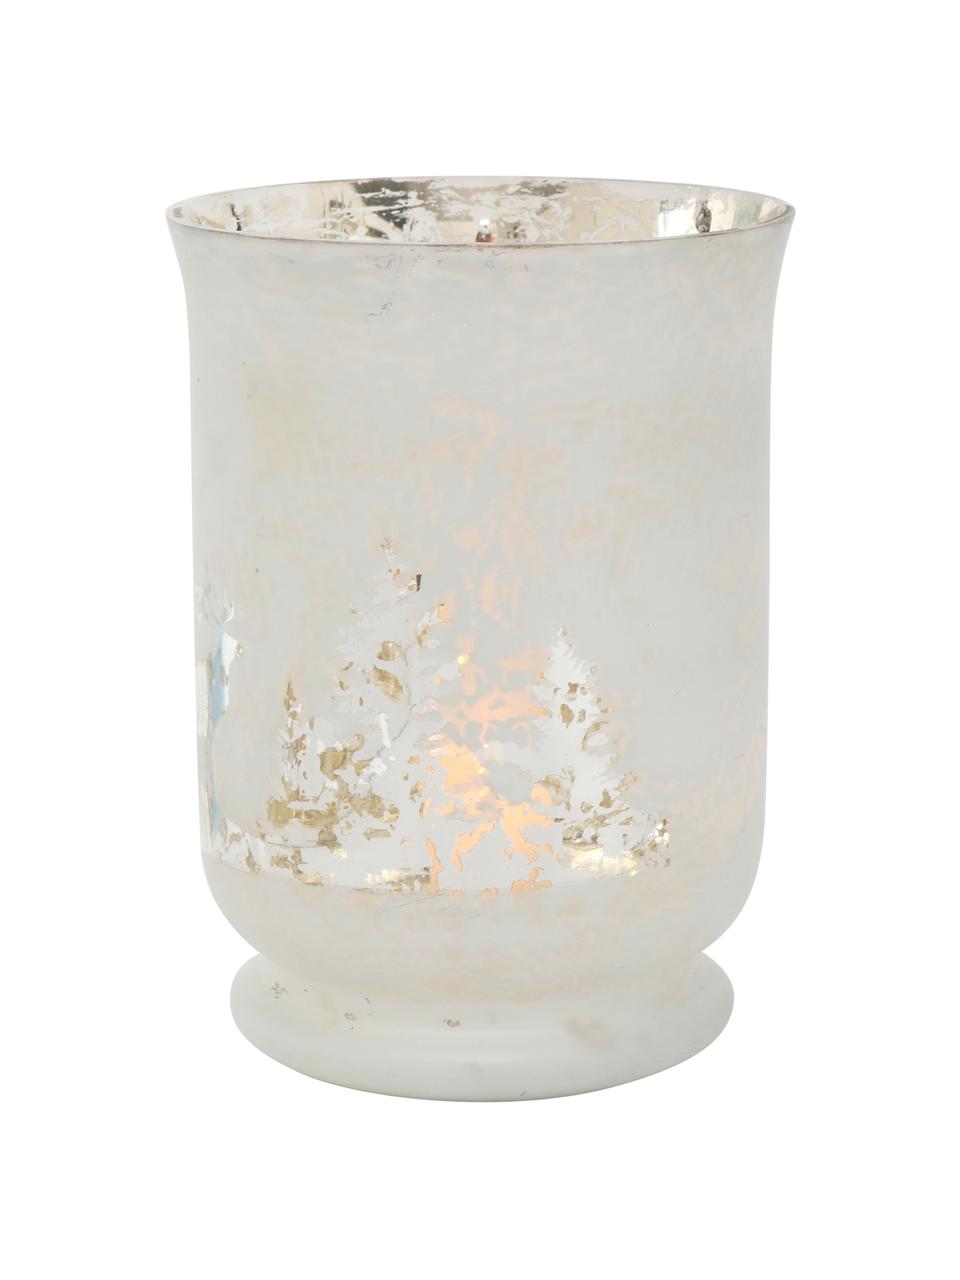 Windlicht Bonaparte, Glas, lackiert, Gebrochenes Weiß, Silberfarben, Ø 14 x H 19 cm